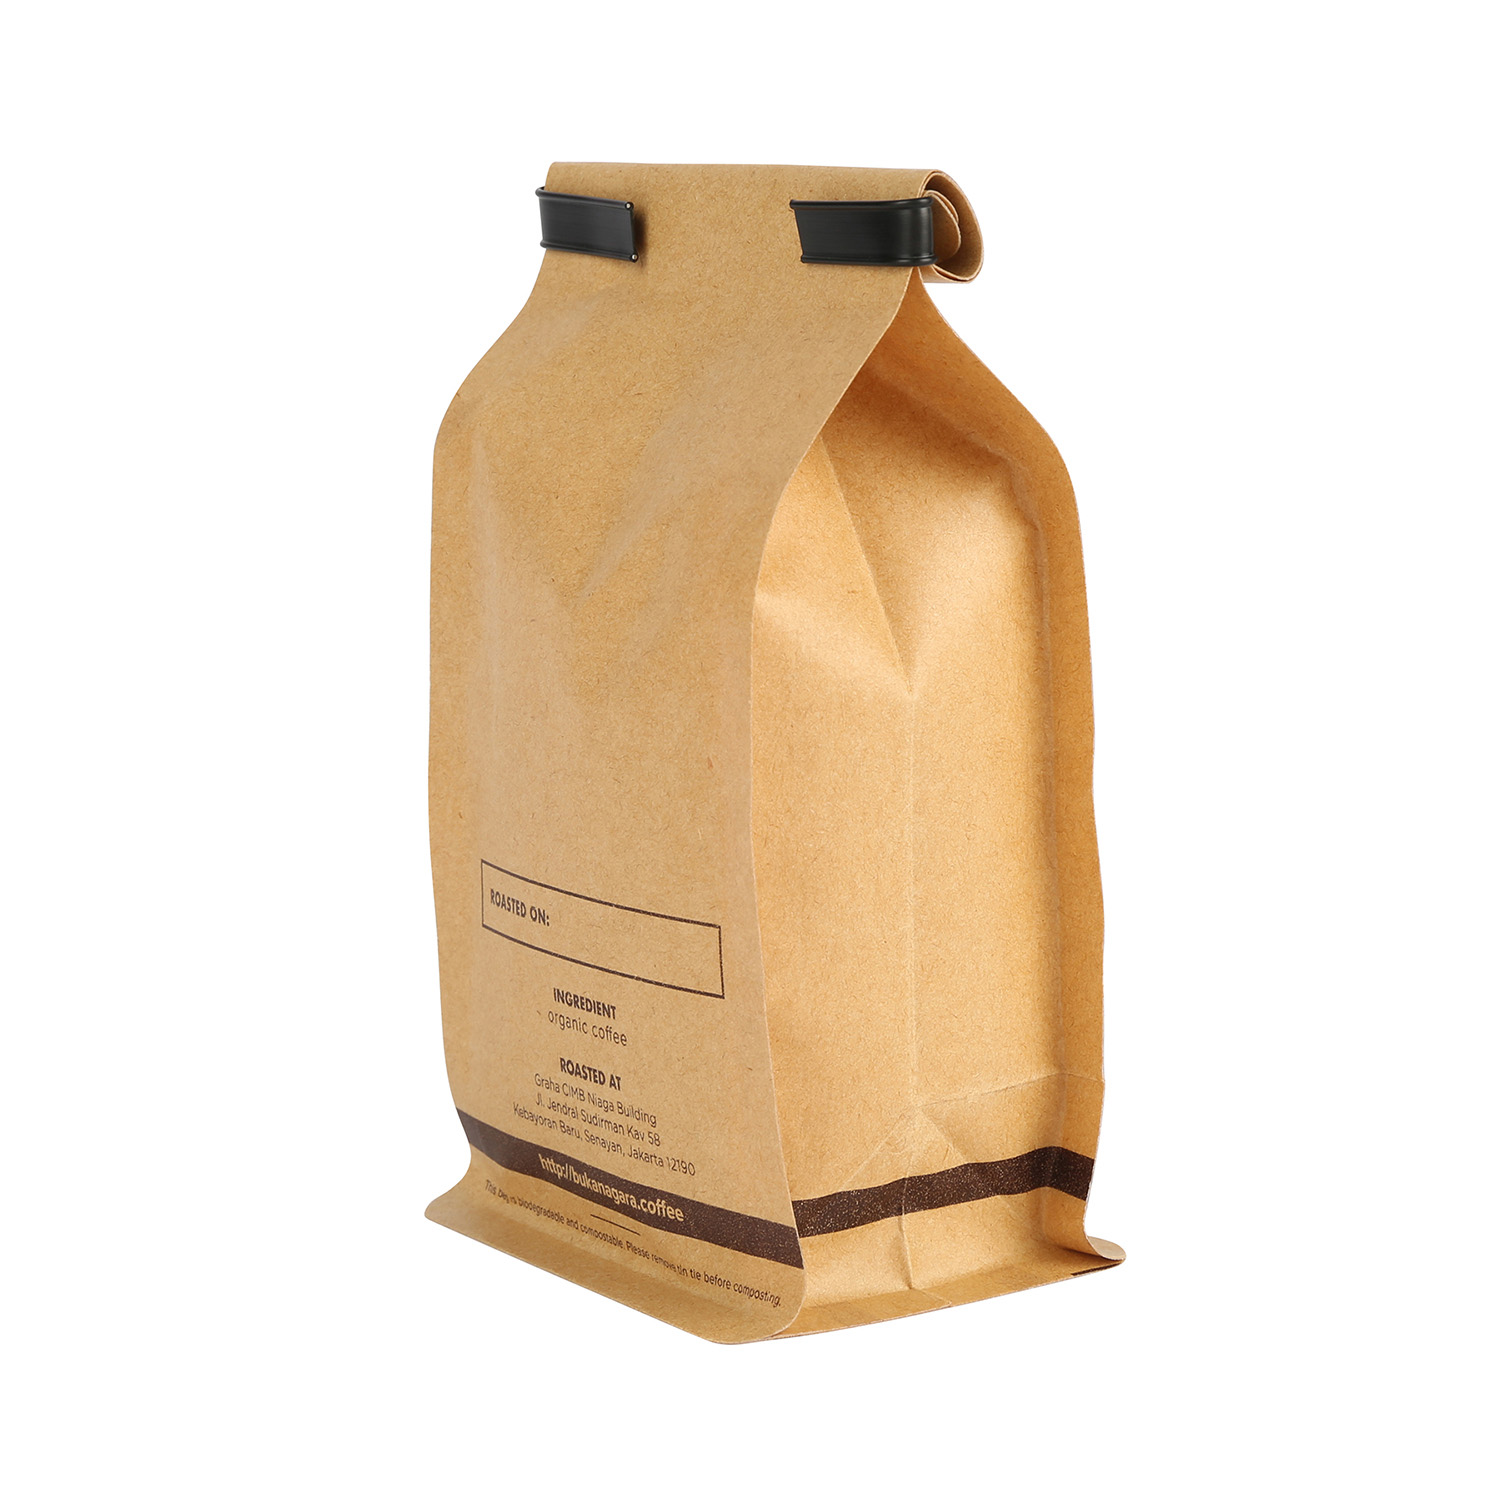 Compostable Biodégradable Box Box Box Pouch Café Bag